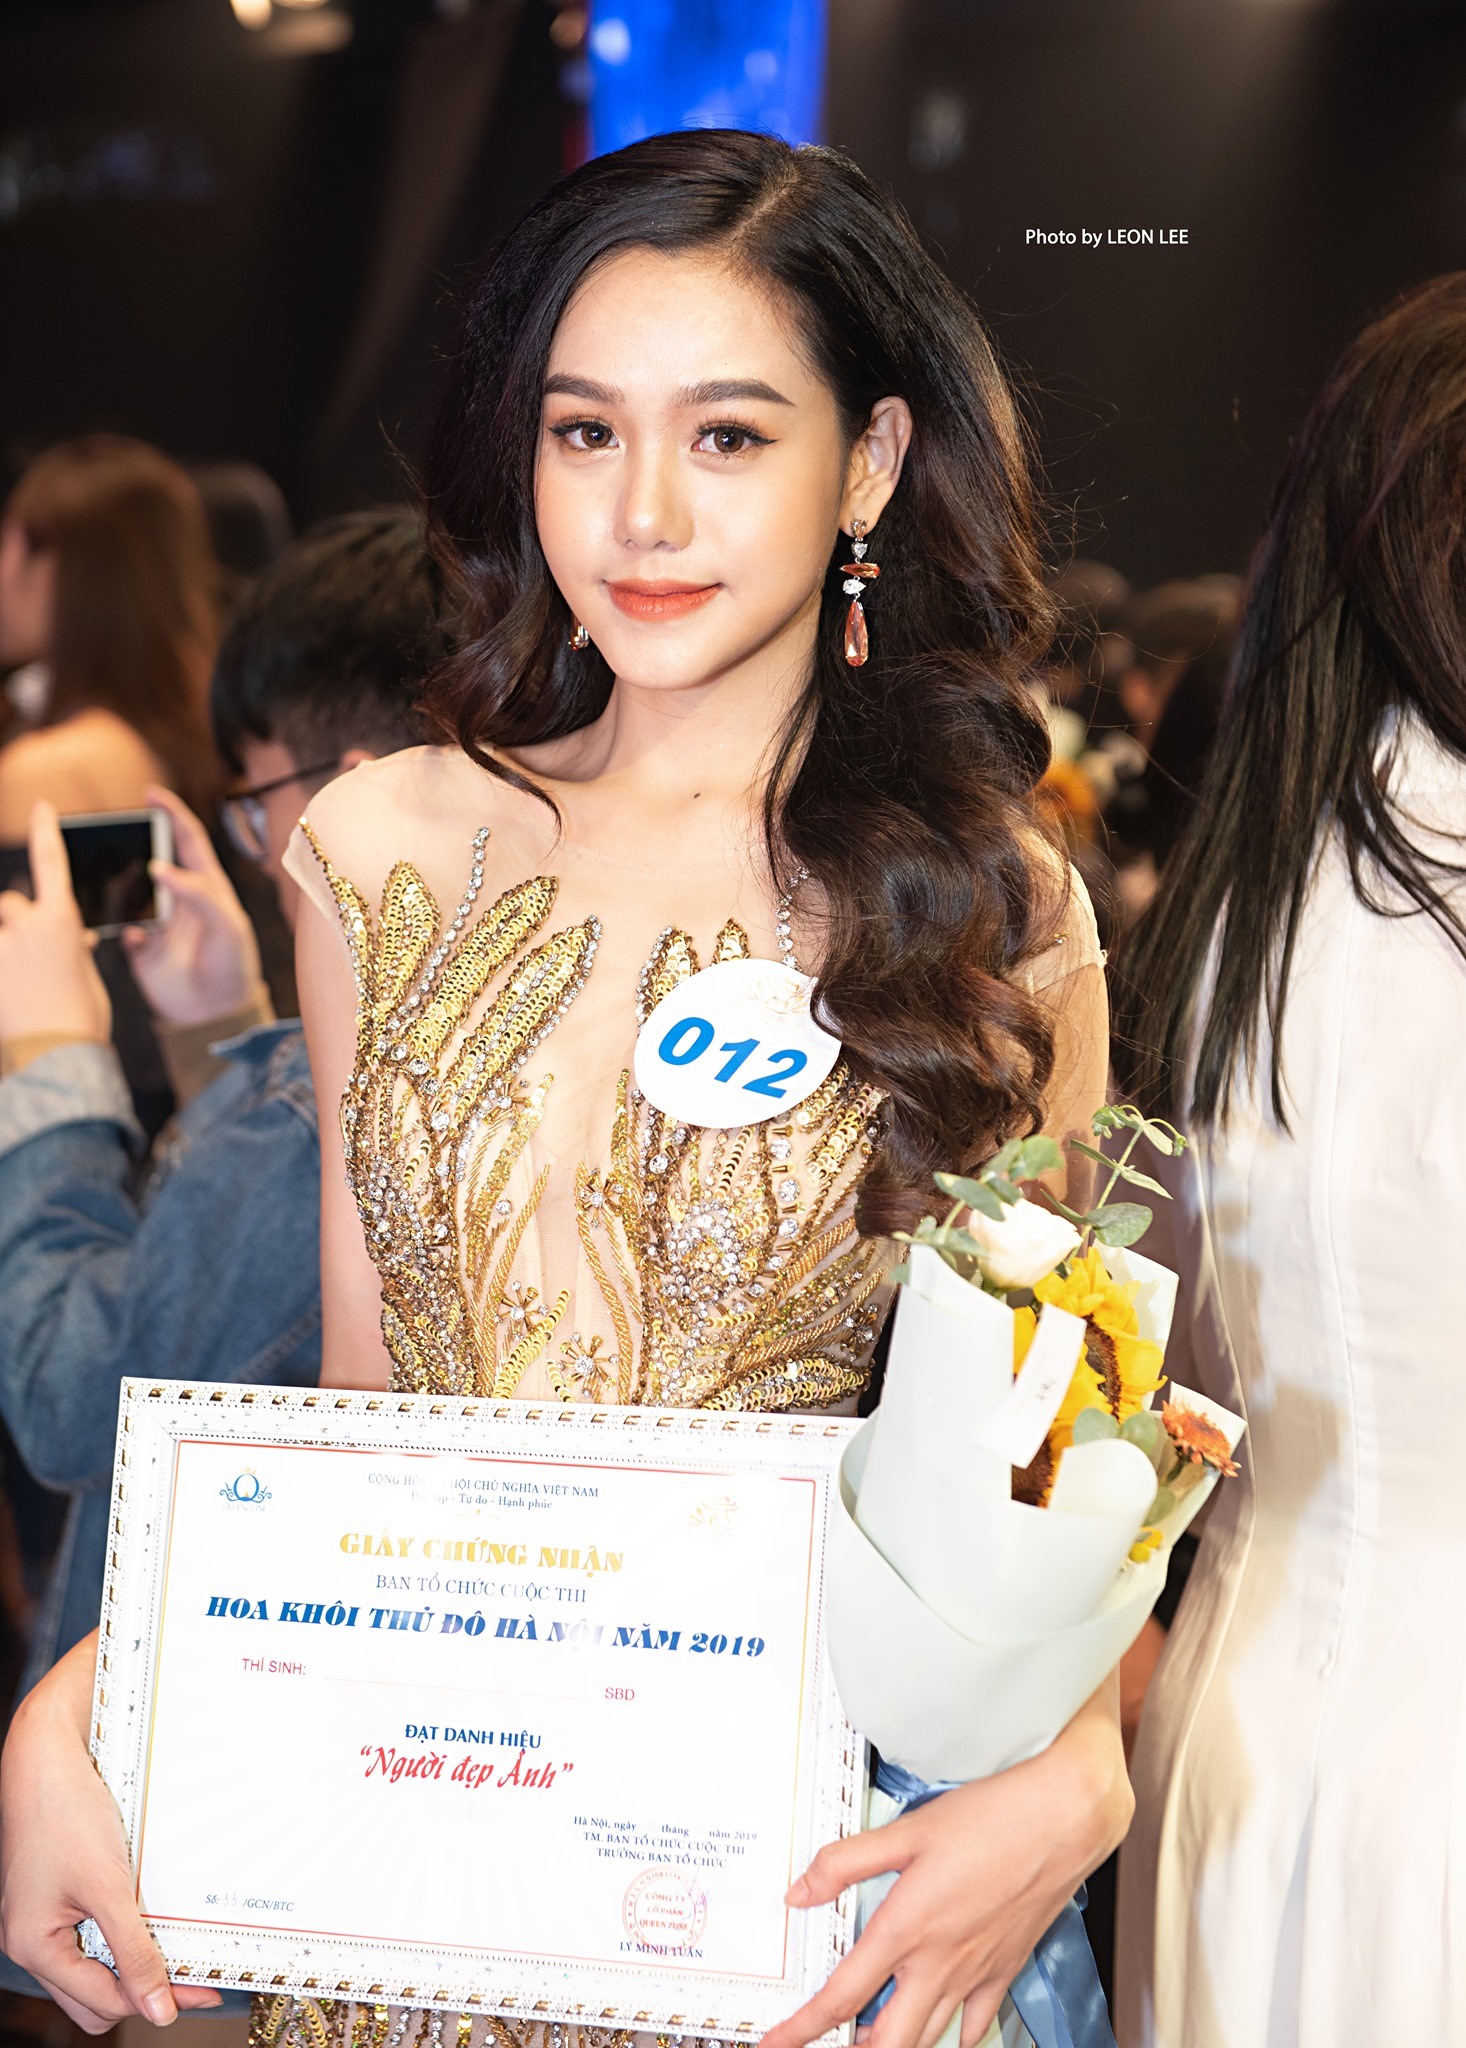 Sang đến 2019, Diệu Thúy tiếp tục tham gia một đấu trường nhan sắc khác là Hoa khôi Thủ đô Hà Nội. Cô lọt vào Top 5 chung cuộc và giành được giải “Người đẹp Ảnh“. Ảnh: Nhân vật cung cấp